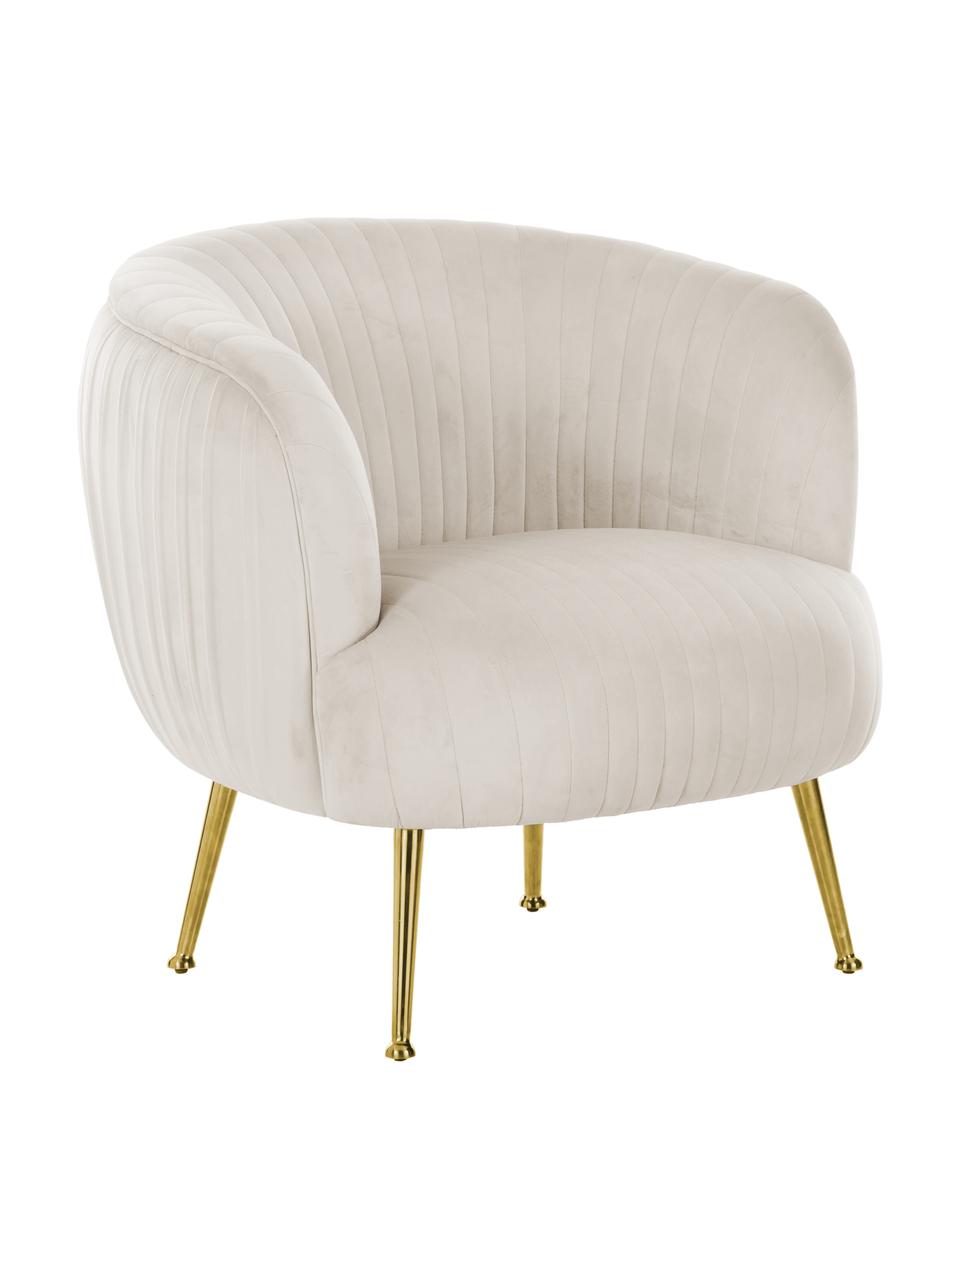 Fluwelen fauteuil Cara in beige, Bekleding: fluweel (polyester), Frame: massief berkenhout, spaan, Poten: gecoat metaal, Fluweel beige, 81 x 78 cm